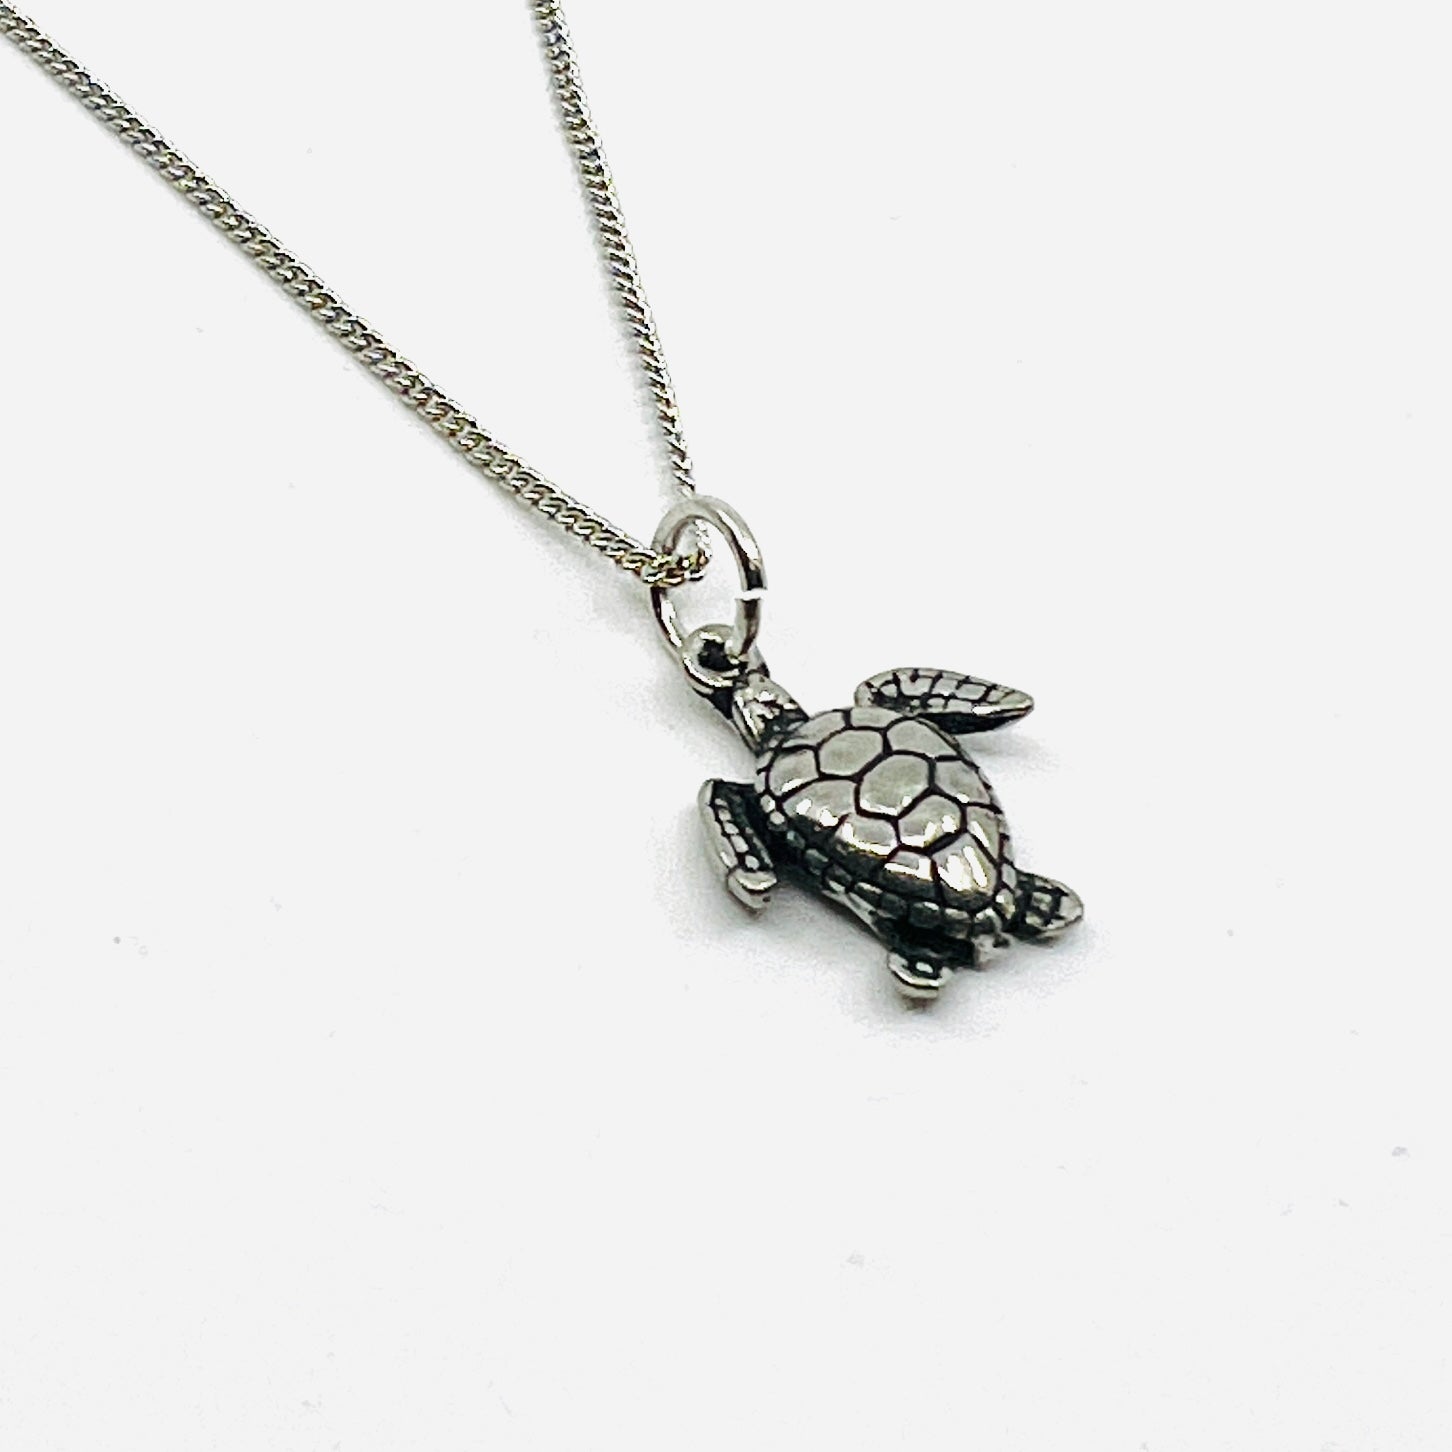 Pewter Turtle Pendant Necklace Jewelry Basic Spirit 